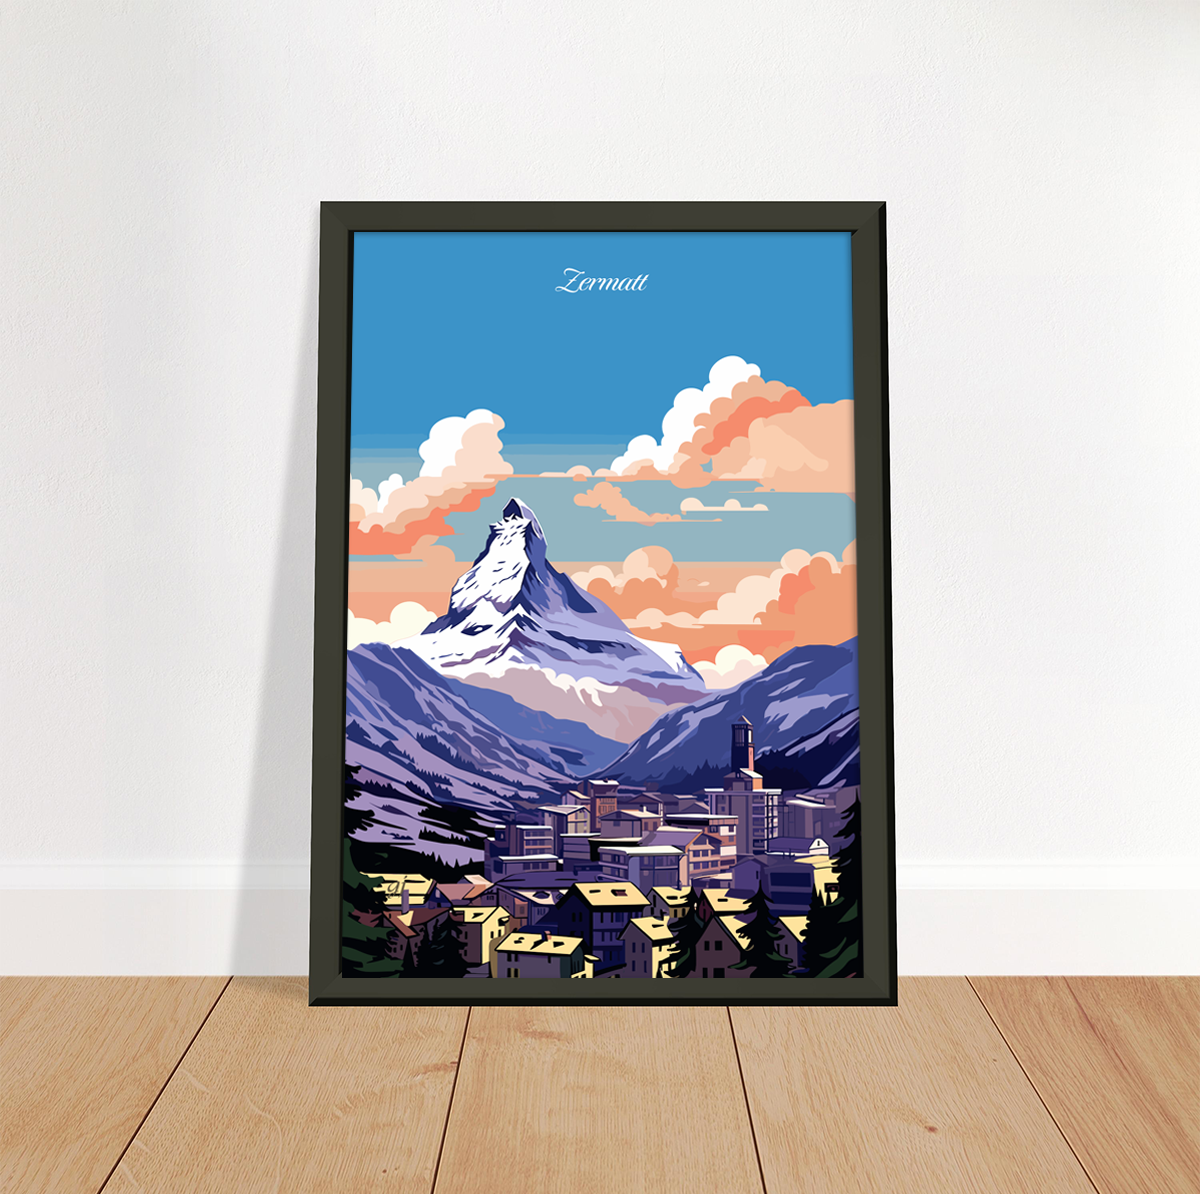 Zermatt poster by bon voyage design